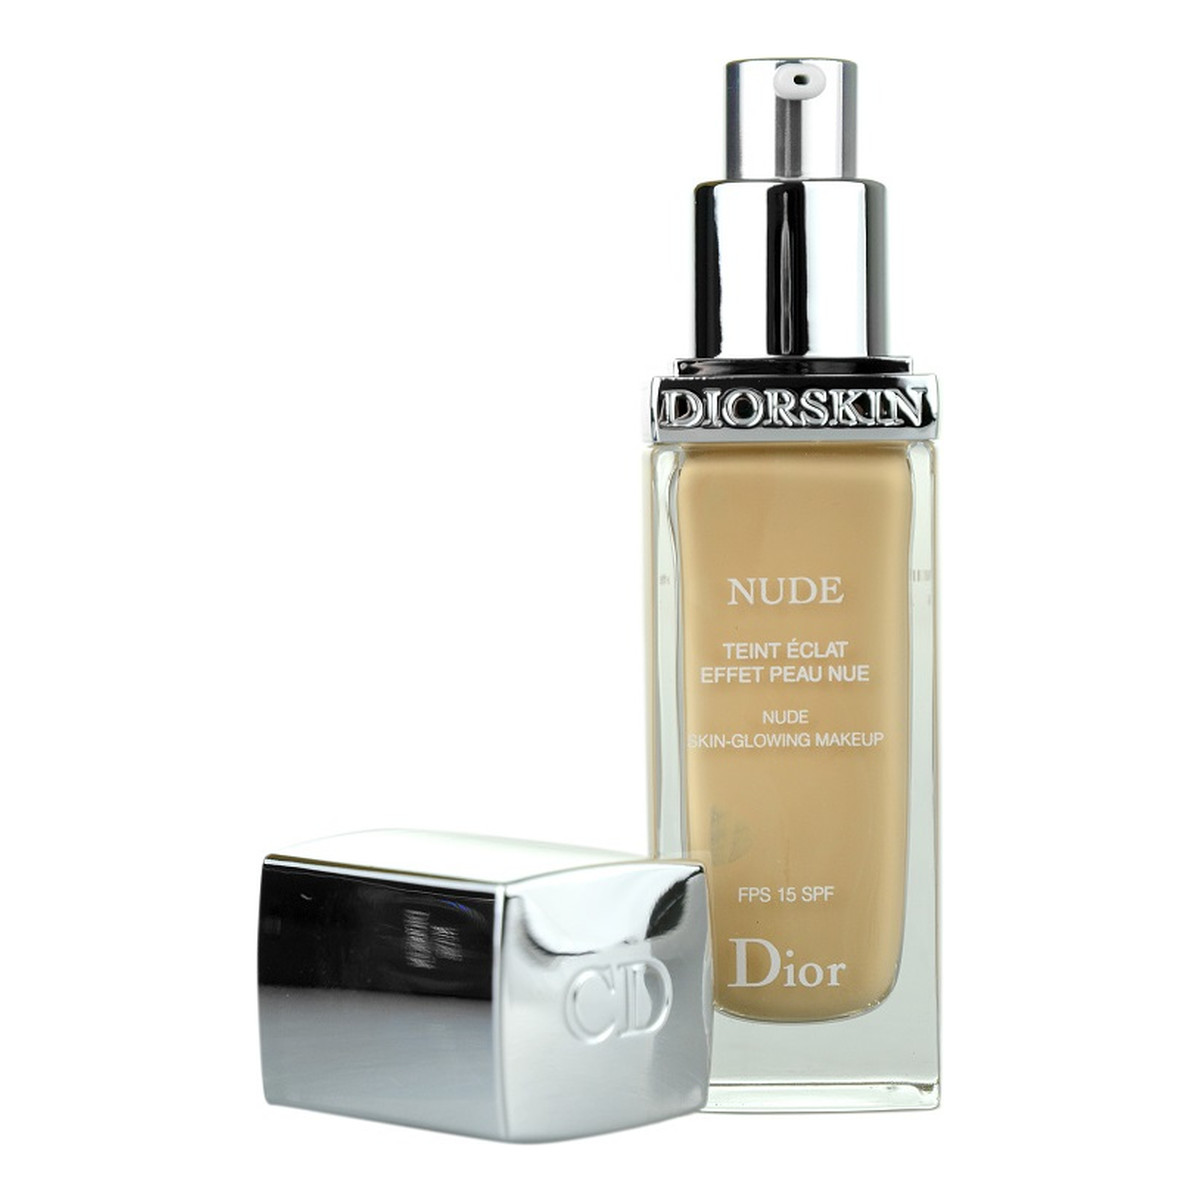 Dior Diorskin Nude Skin-Glowing Makeup Podkład rozświetlający SPF15 30ml